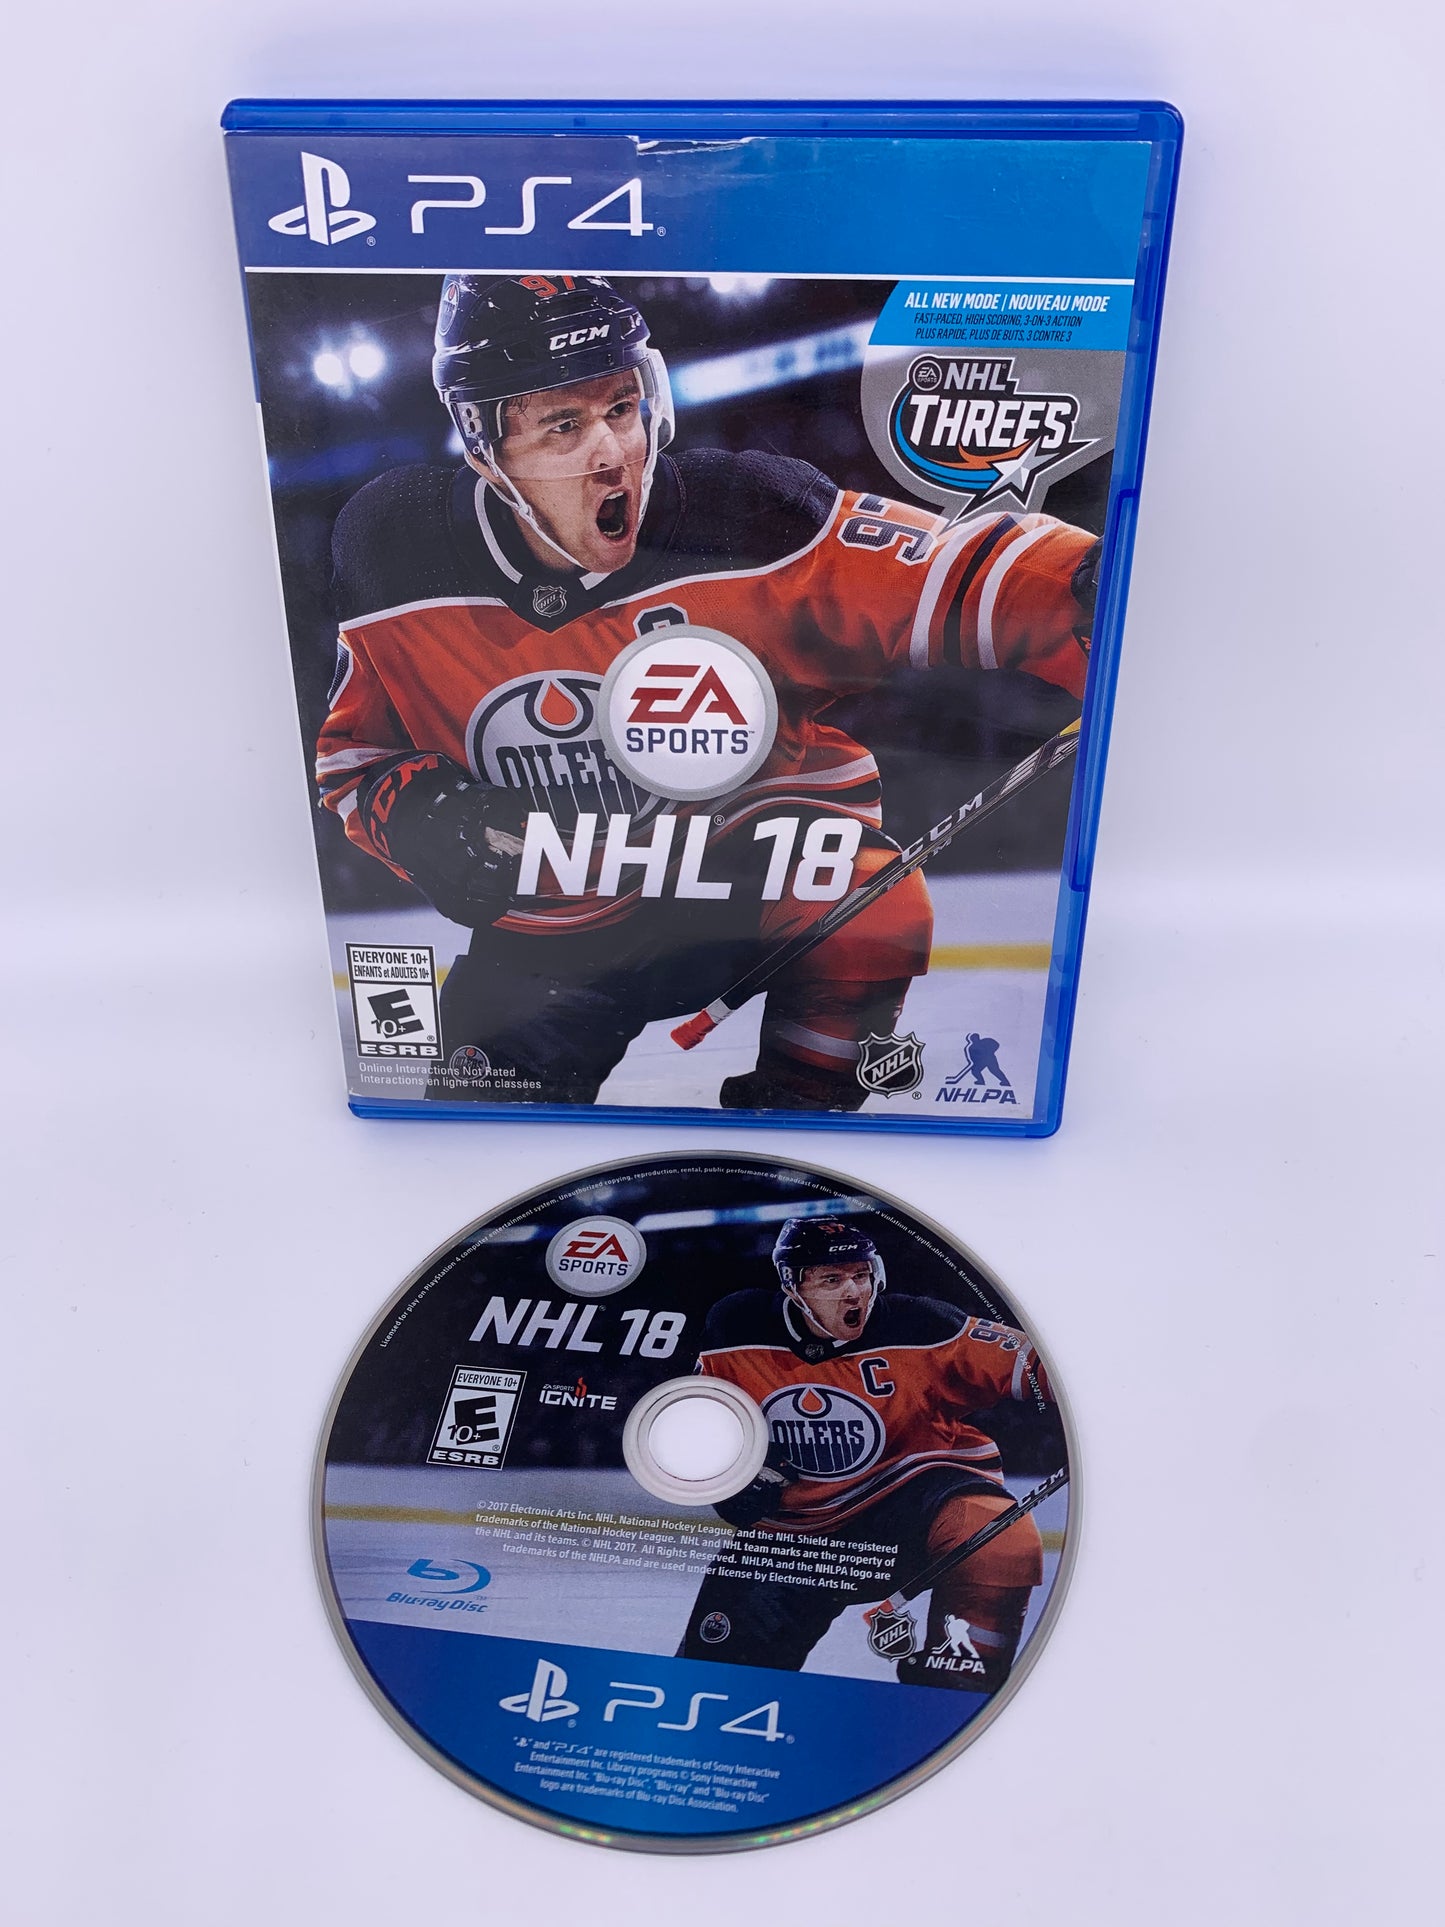 PiXEL-RETRO.COM : SONY PLAYSTATION 4 (PS4) COMPLETE CIB BOX MANUAL GAME NTSC NHL 18